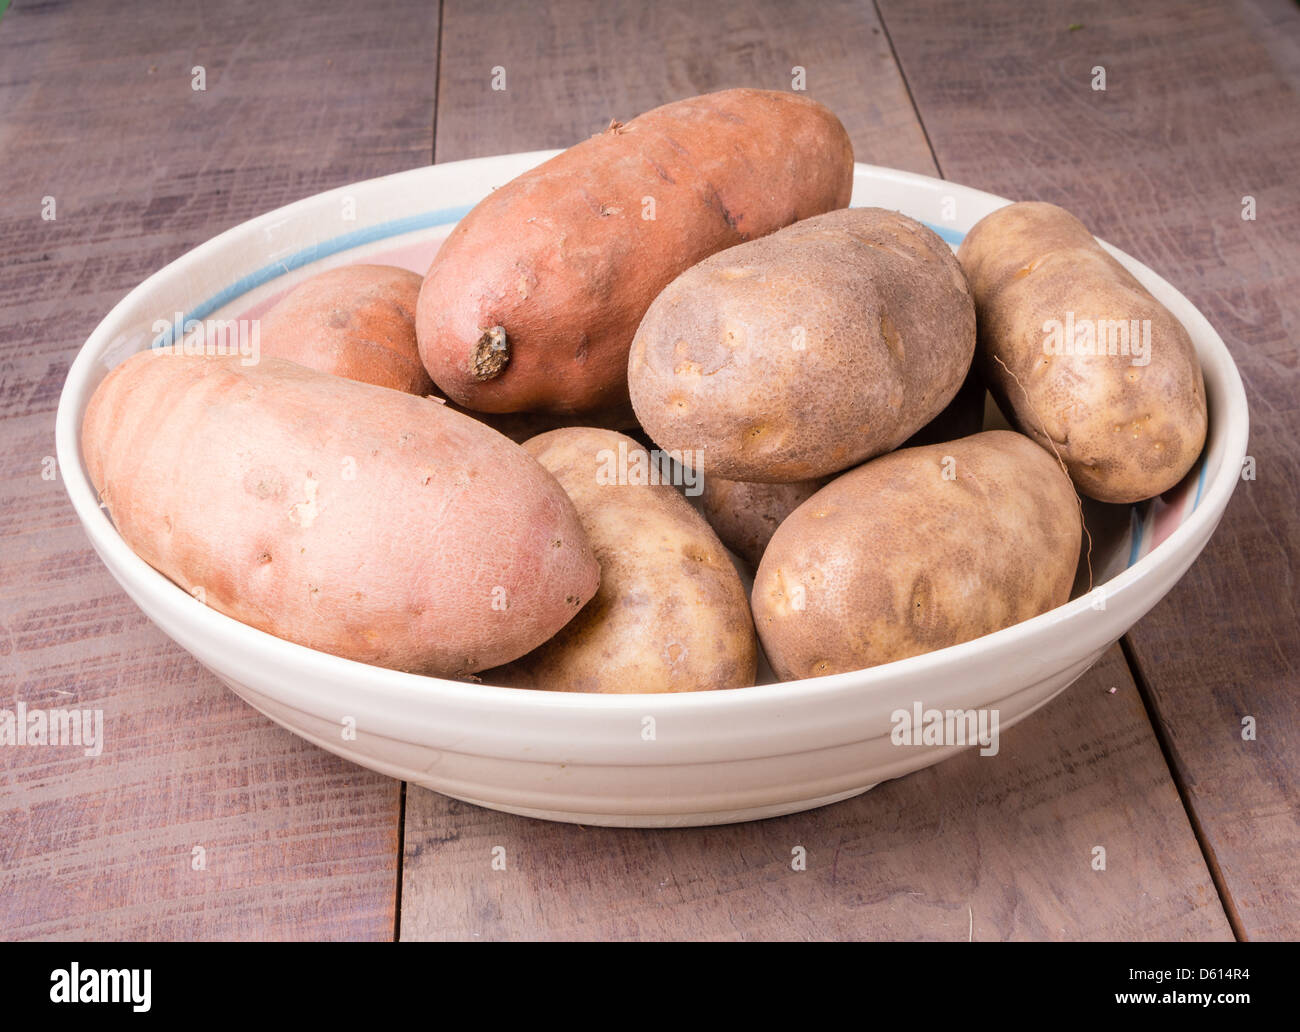 Un bol d'ignames, patates douces et les pommes de terre roussâtres sur une table en bois Banque D'Images